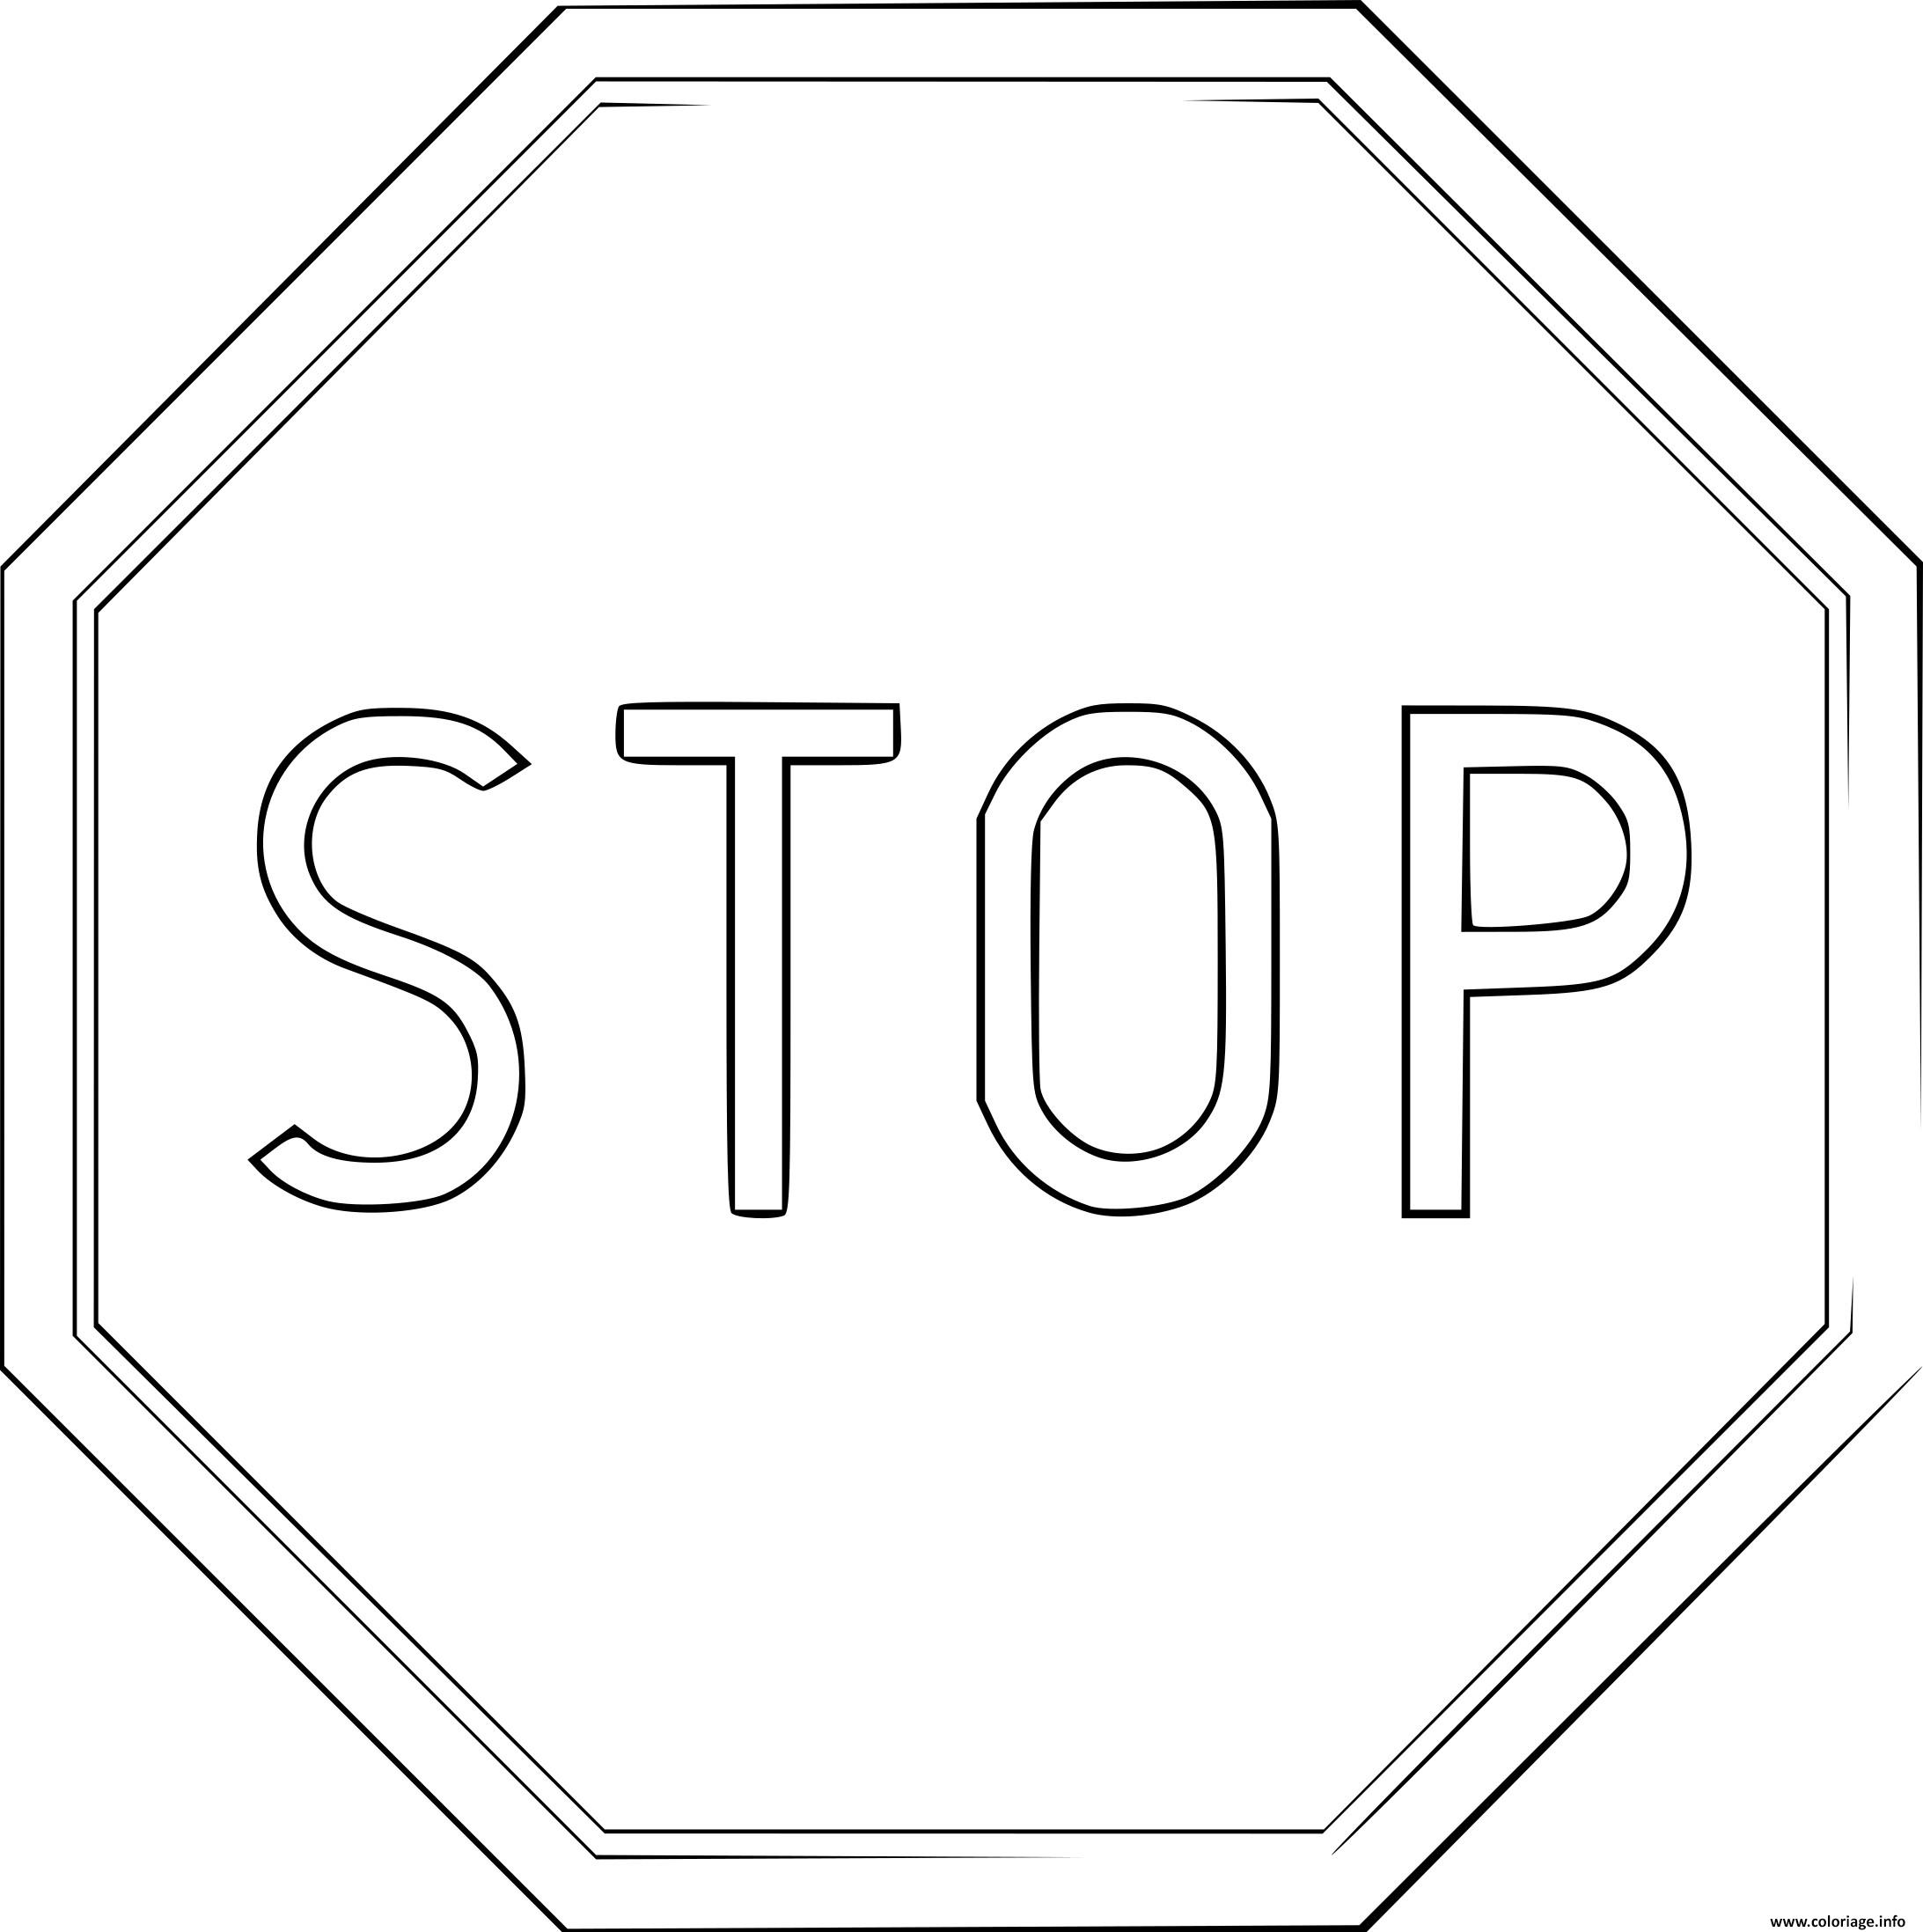 Dessin panneau stop arret securite routiere Coloriage Gratuit à Imprimer